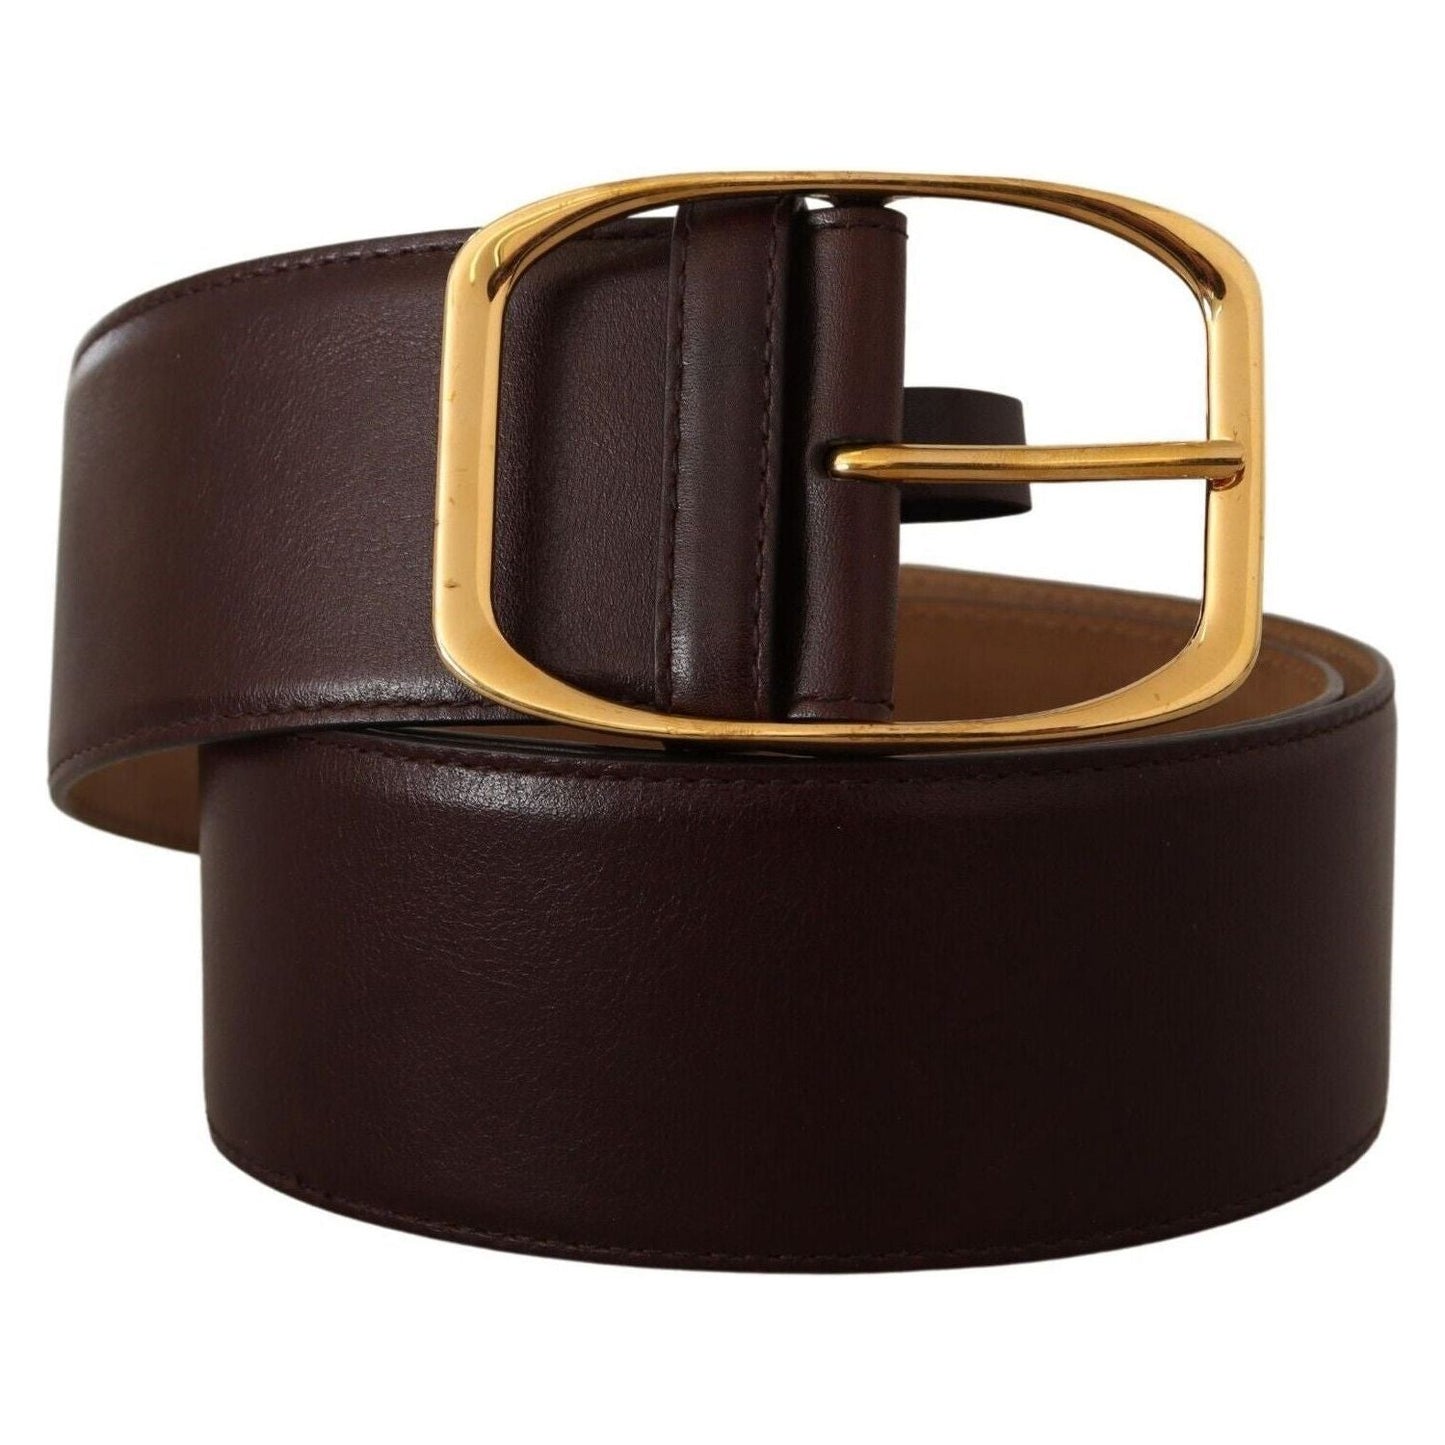 Dolce & Gabbana Elegant Dark Brown Leather Belt with Gold Buckle dark-brown-leather-gold-metal-buckle-belt-2